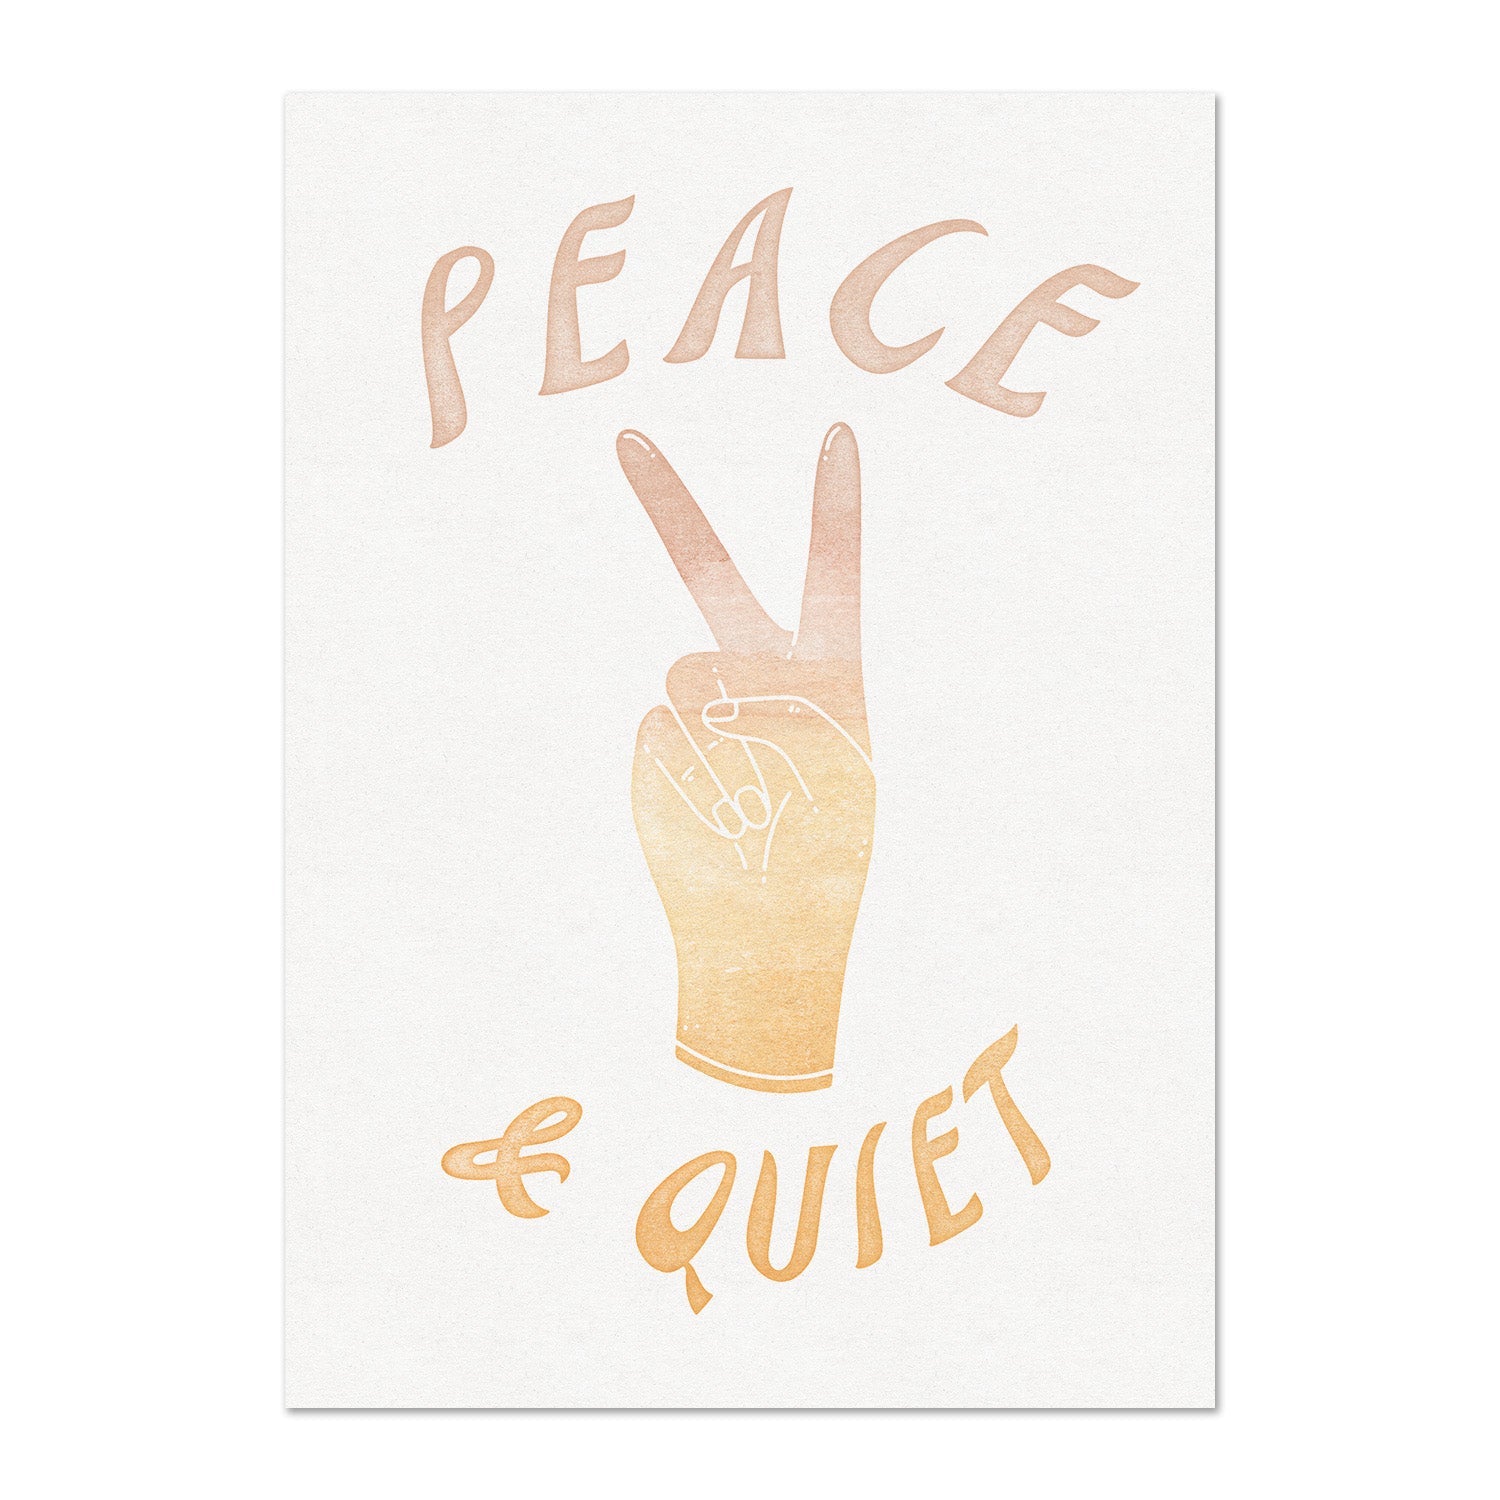 Peace & Quiet